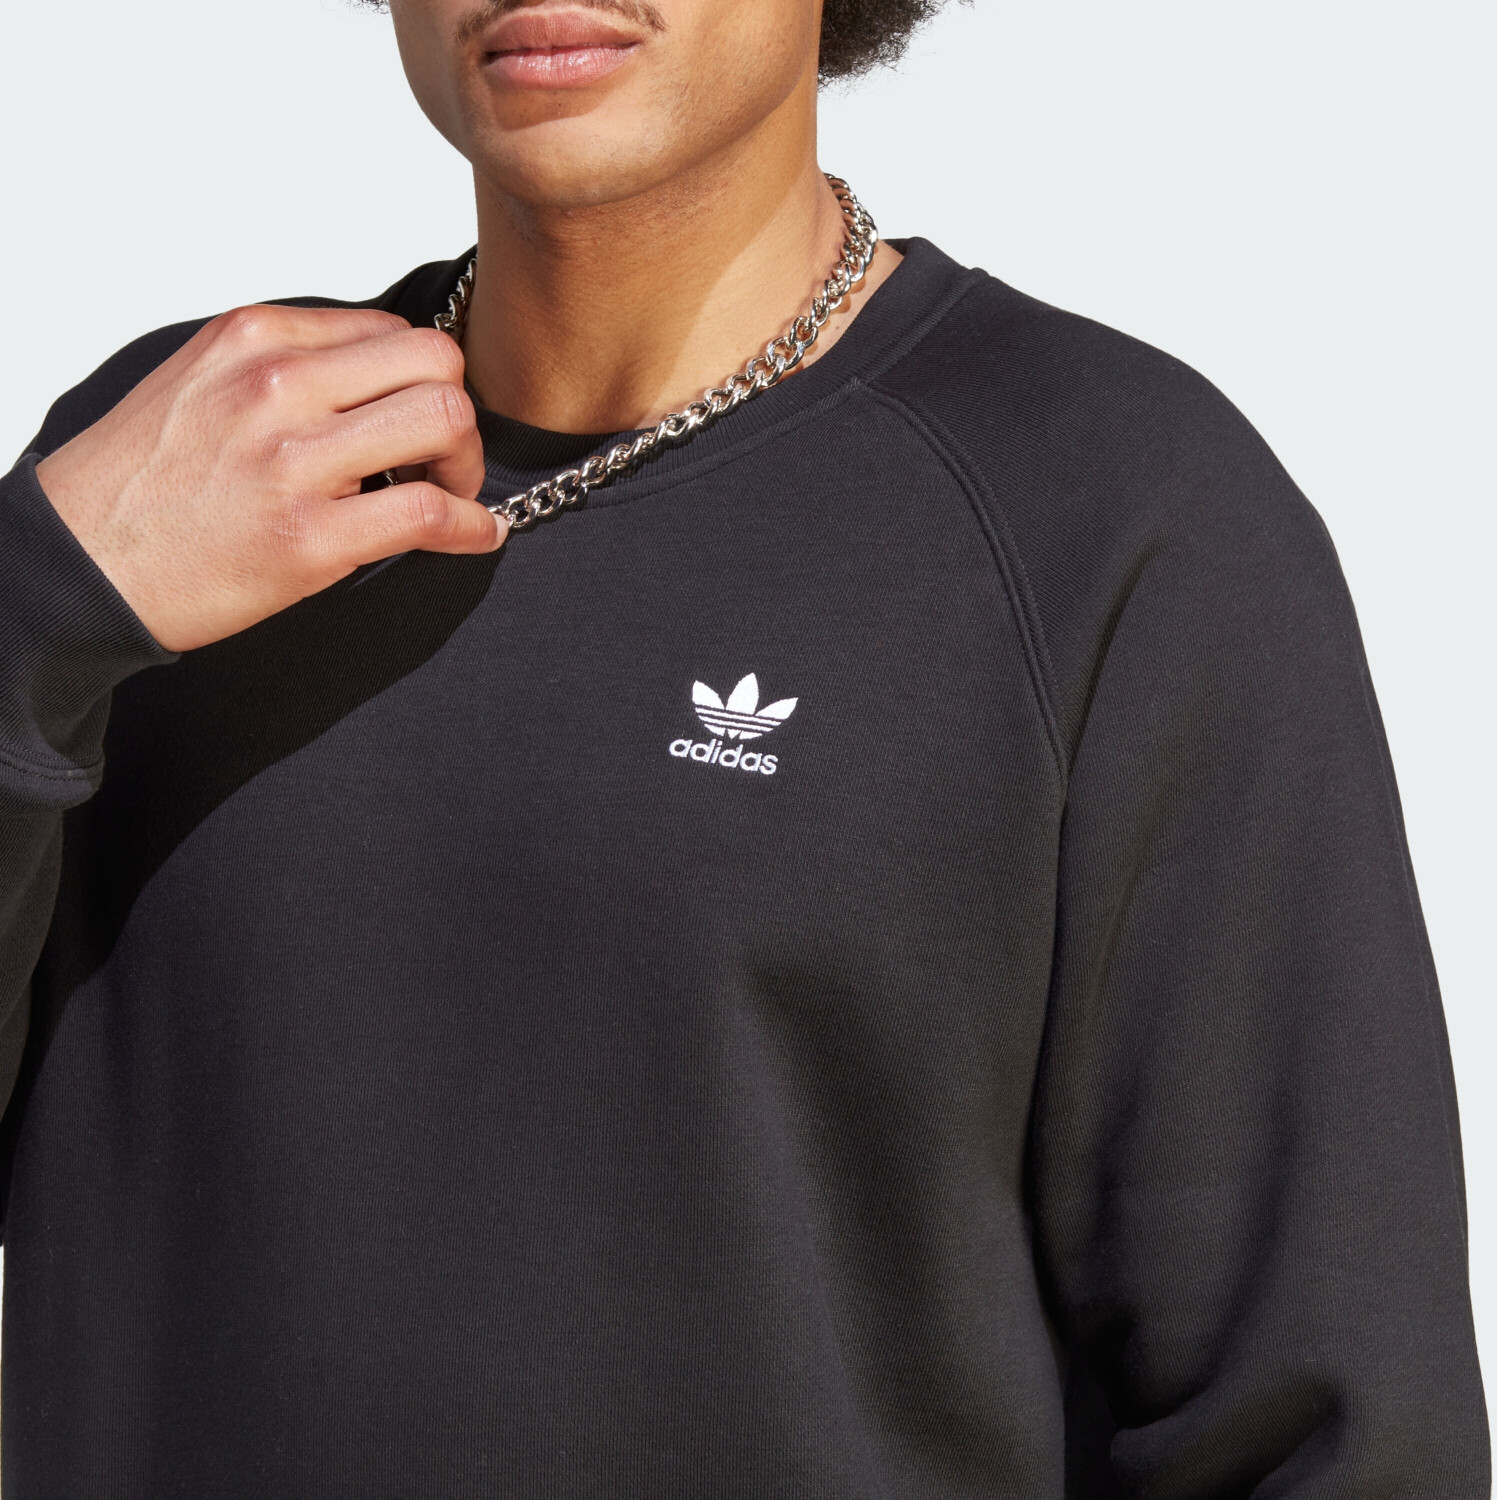 Preisvergleich Sweatshirt 43,86 bei Trefoil € ab | Adidas Man (IM4532) black Essentials